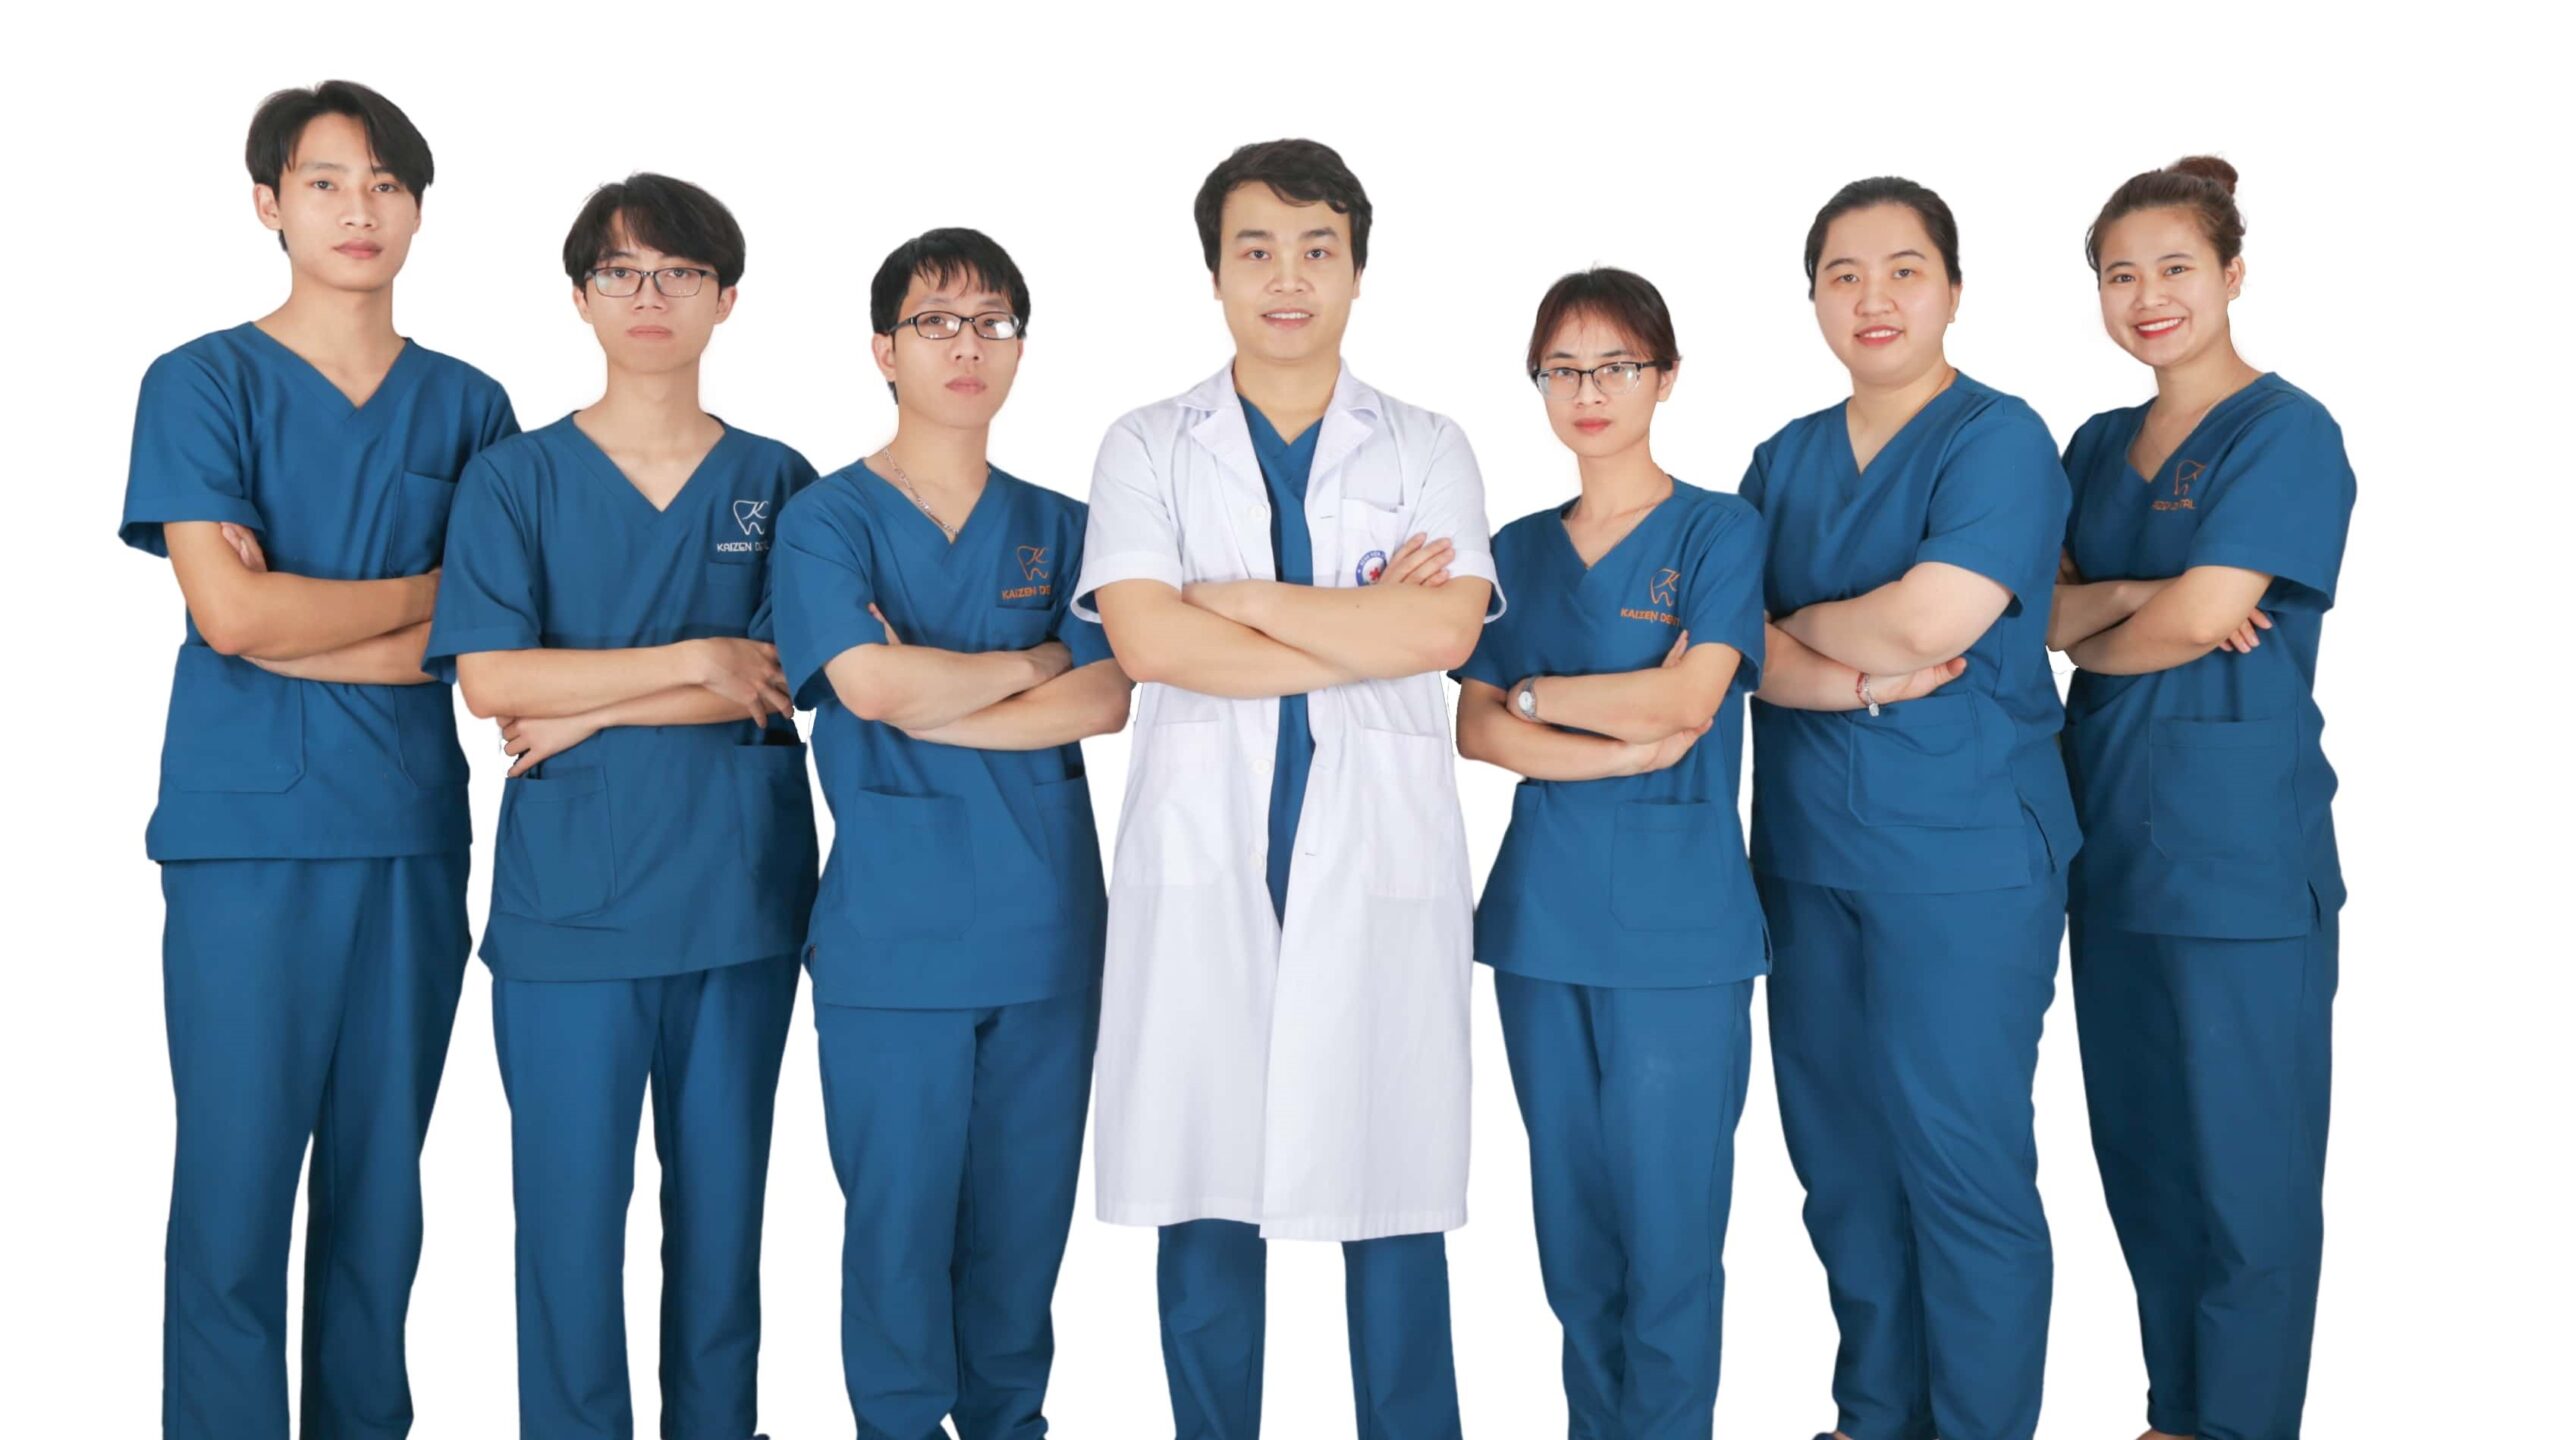 Đội ngũ bác sĩ Nha khoa Kaizen – Improving Your Smile